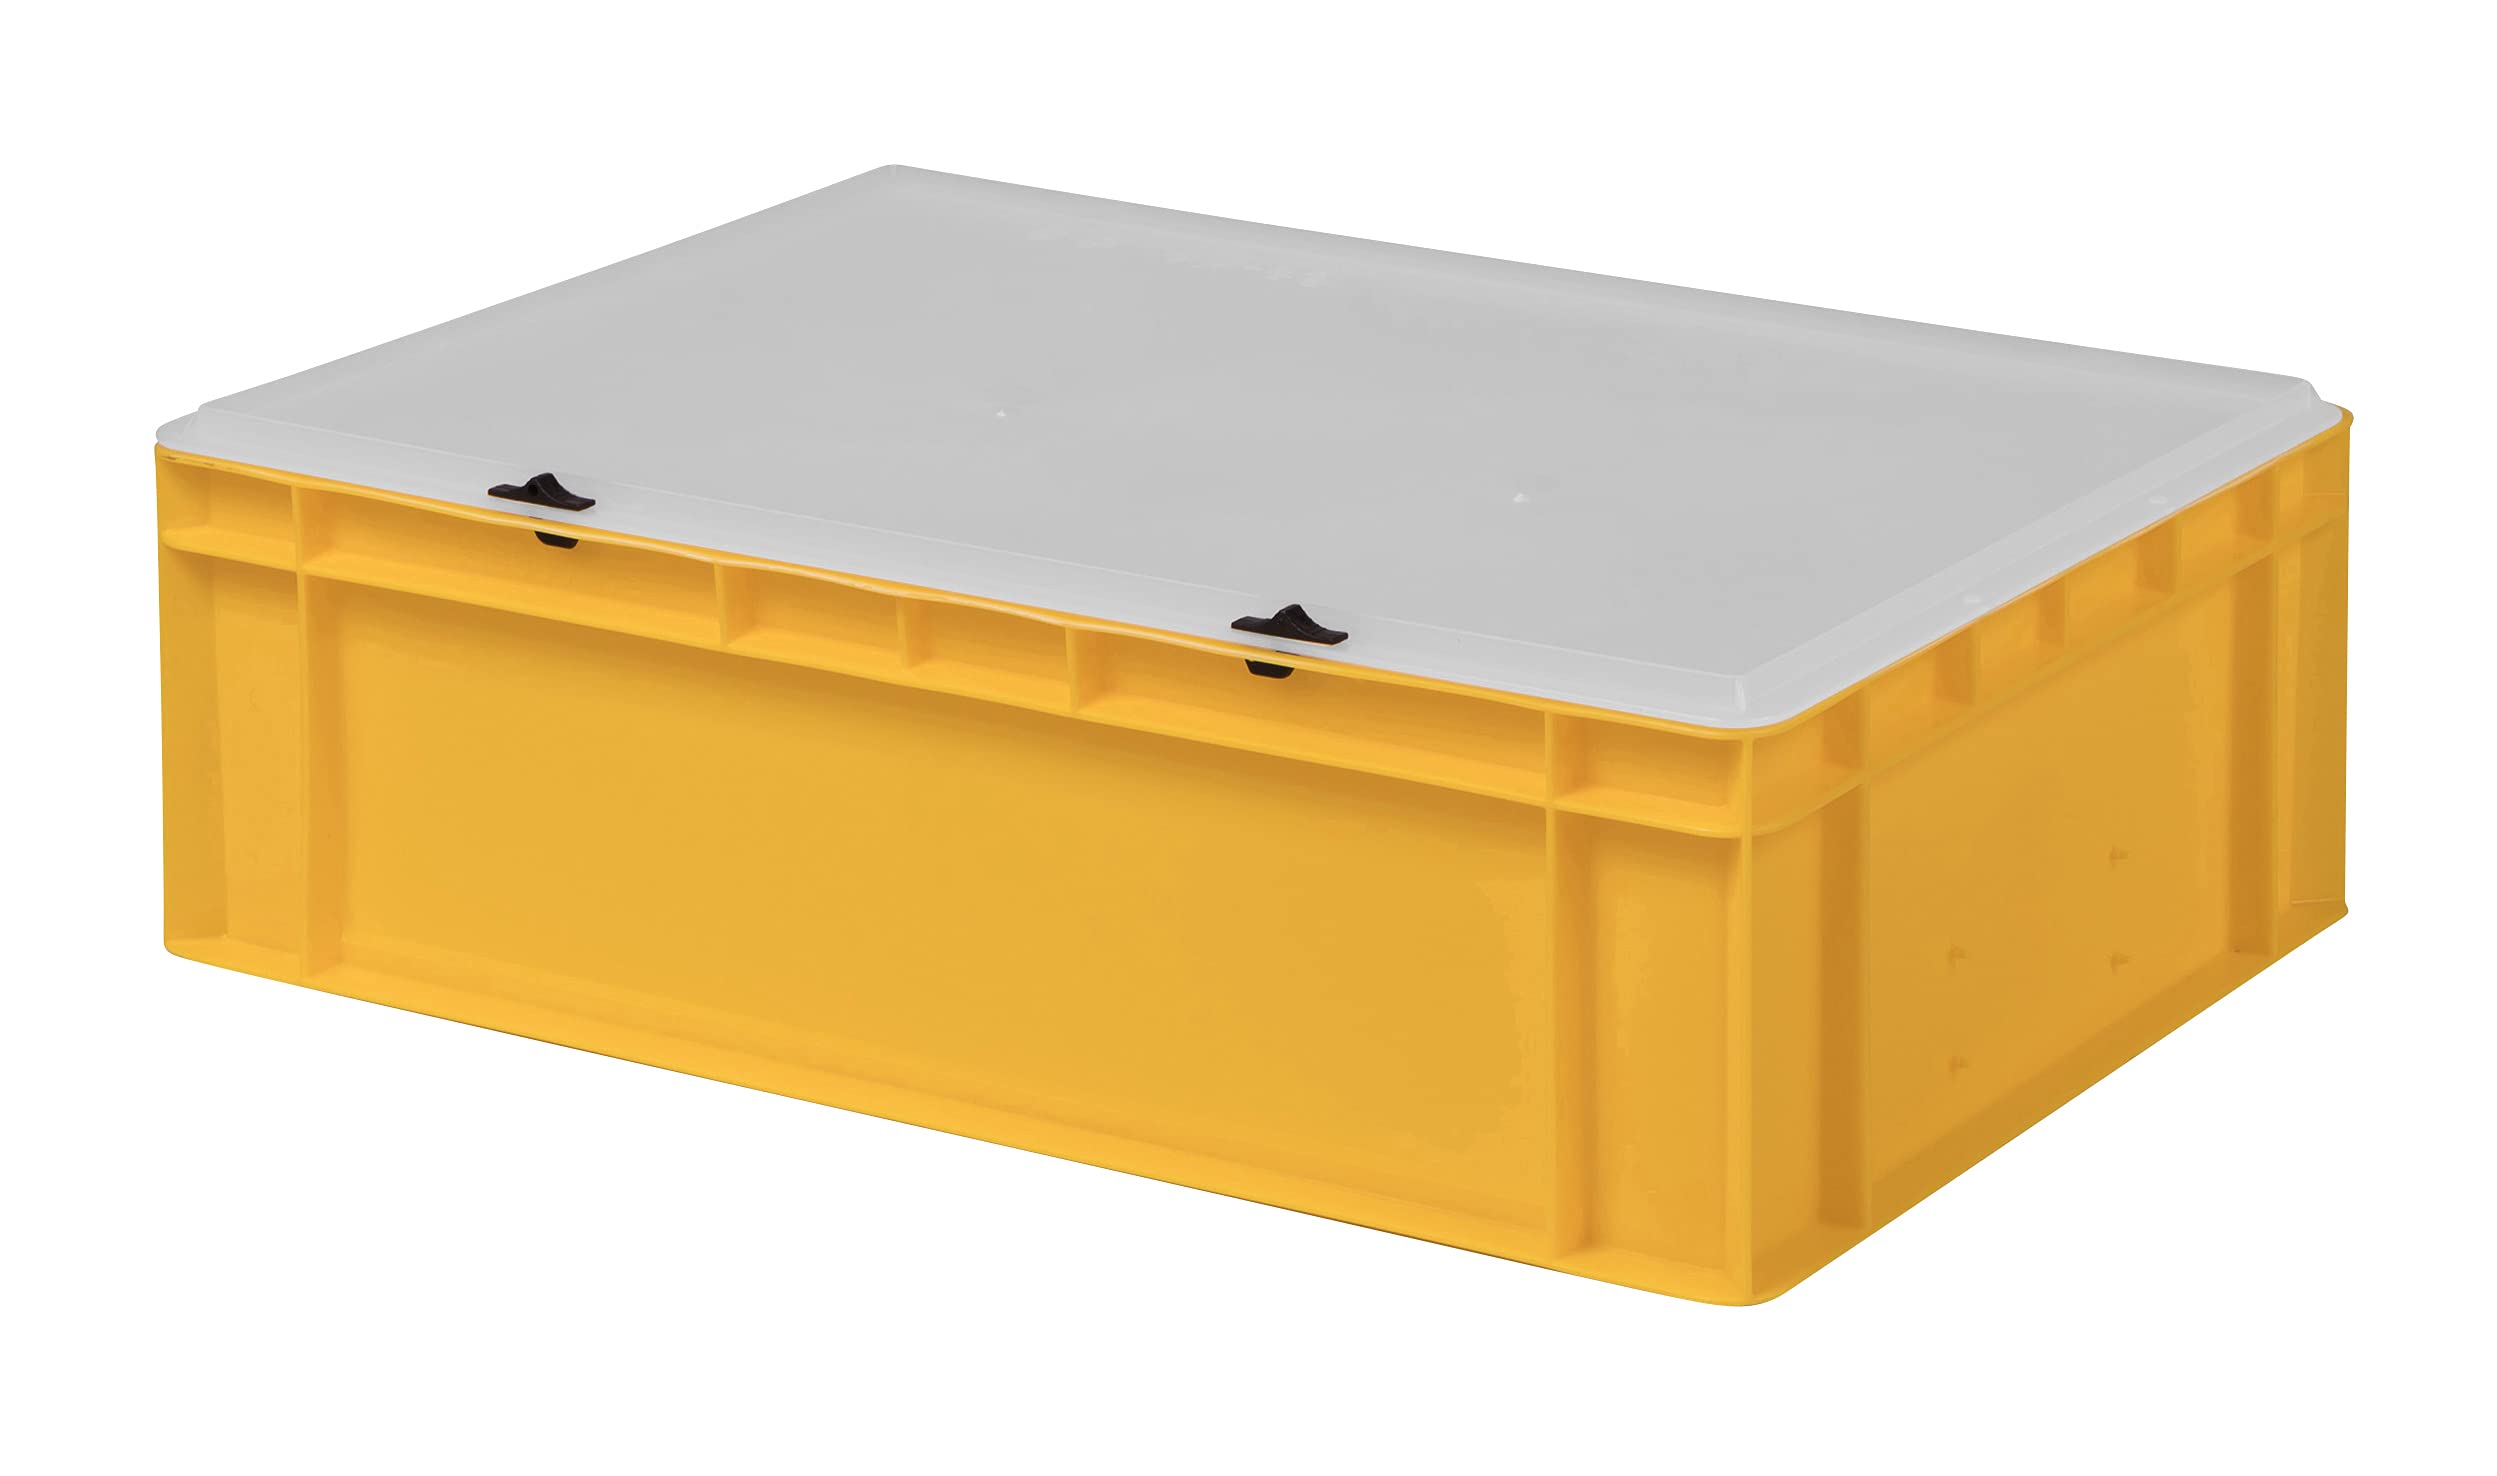 1a-TopStore Design Eurobox Stapelbox Lagerbehälter Kunststoffbox in 5 Farben und 16 Größen mit transparentem Deckel (matt) (gelb, 60x40x18 cm)